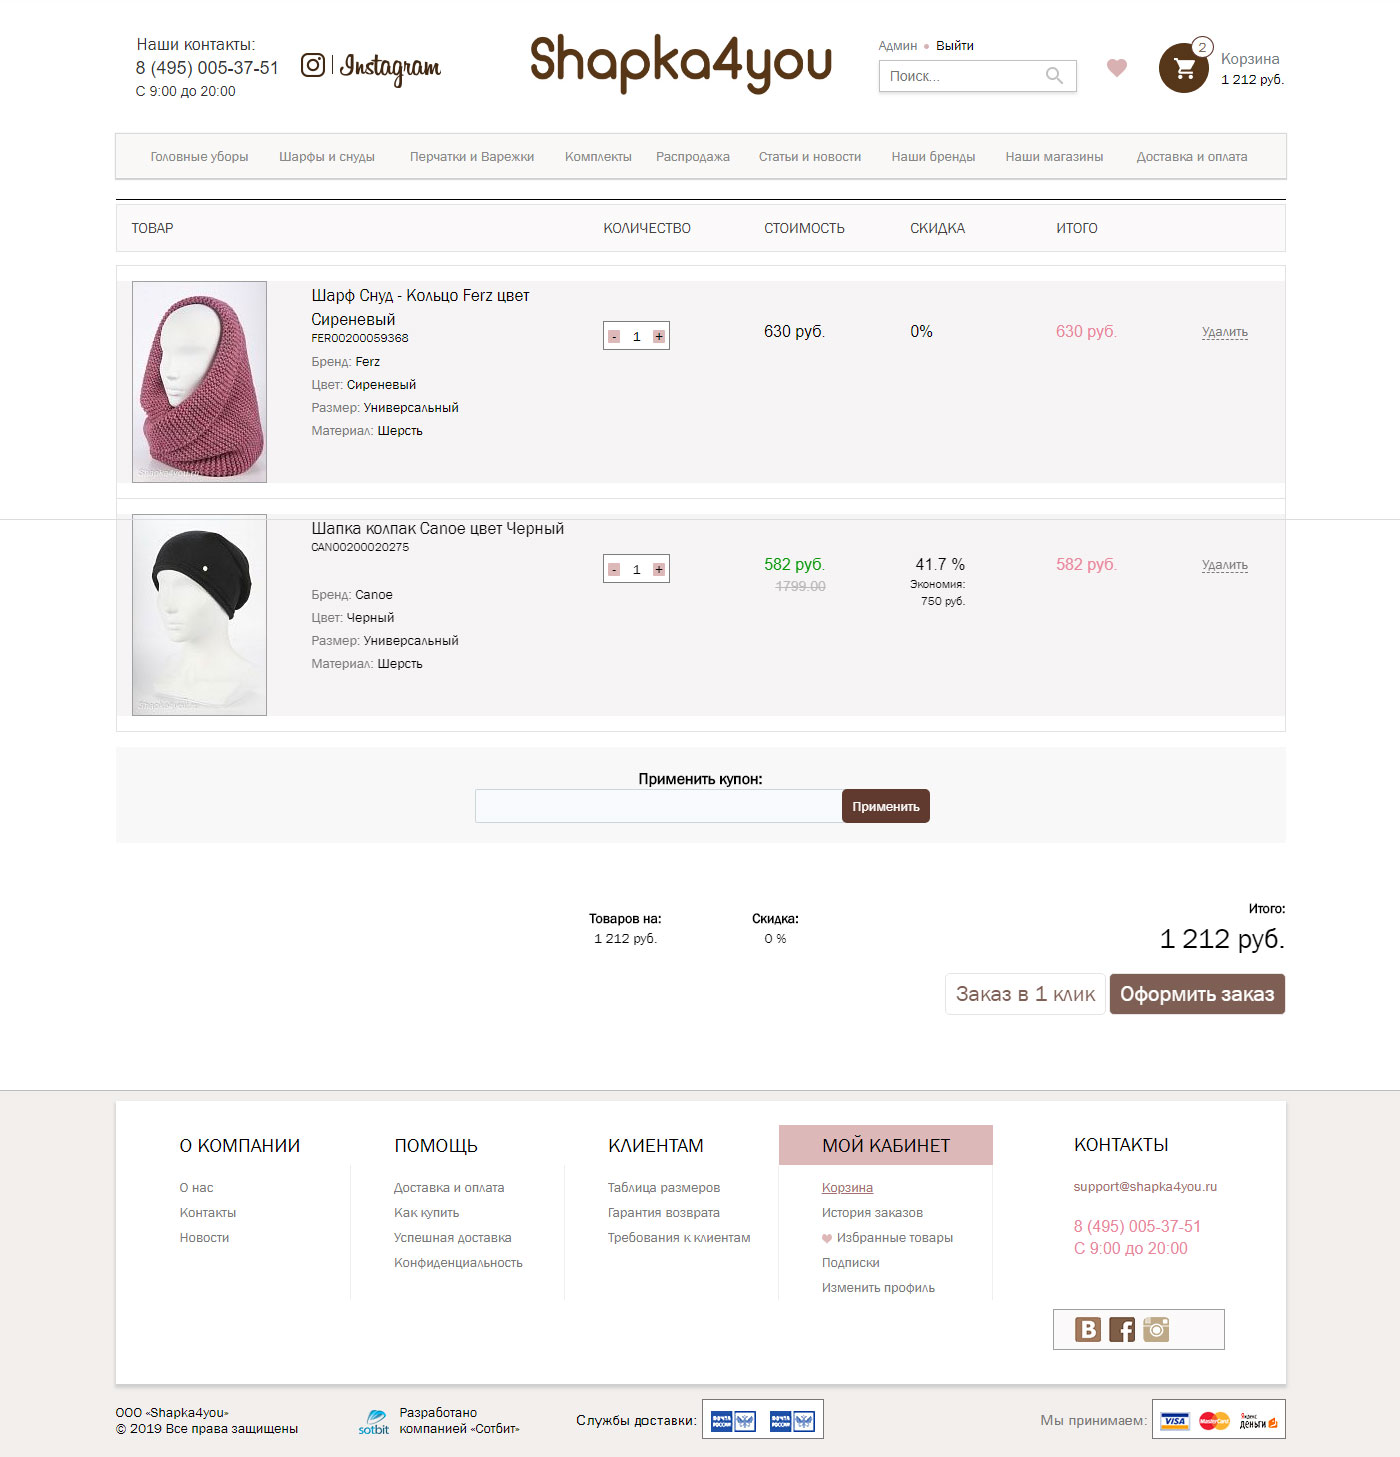 Корзина, избранное и оформление заказа на сайте shapka4you.ru (Битрикс)